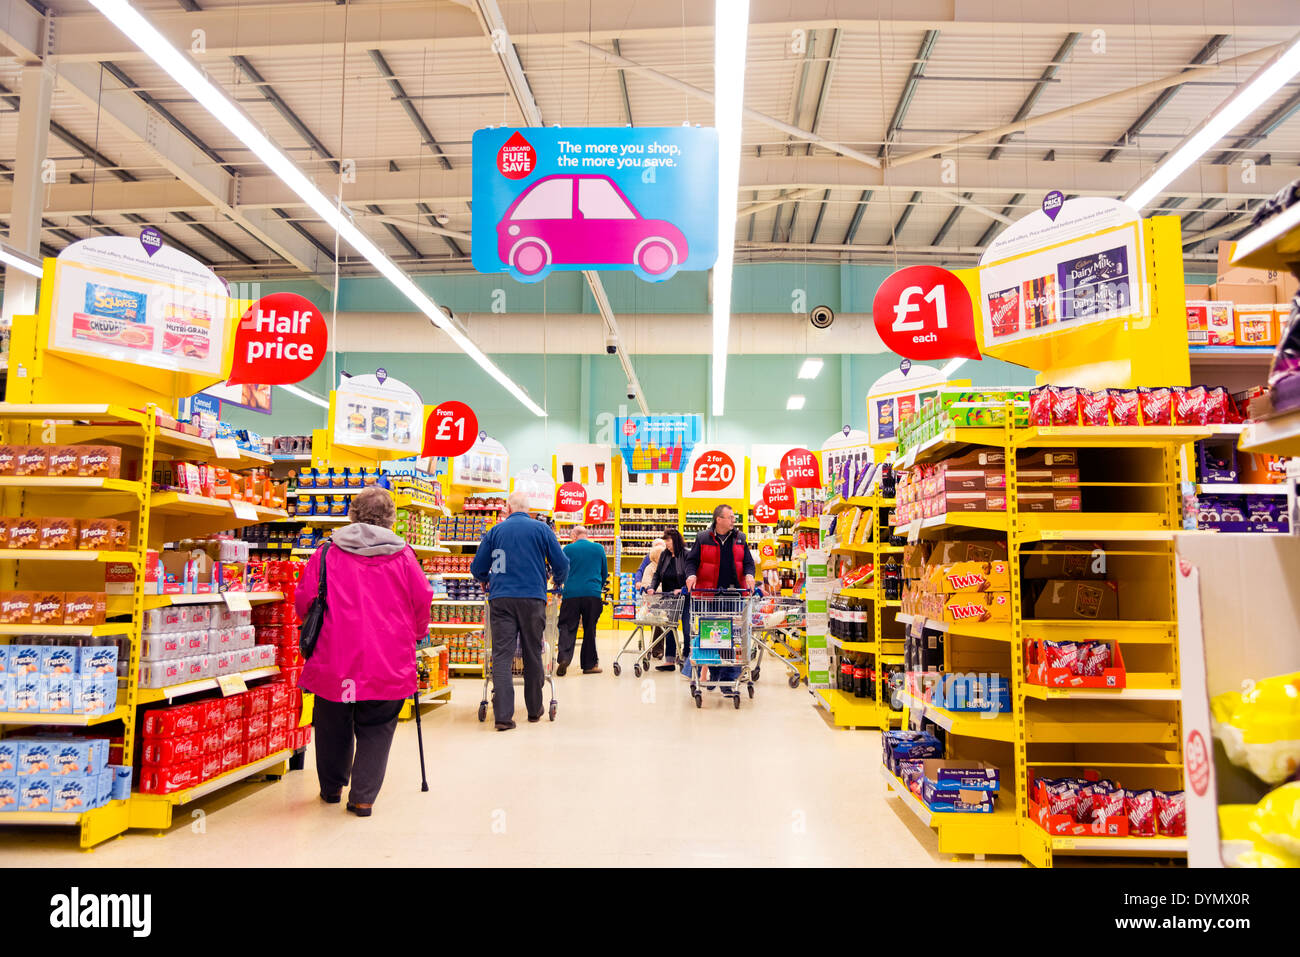 Tesco supermarket aisle, UK. Stock Photo